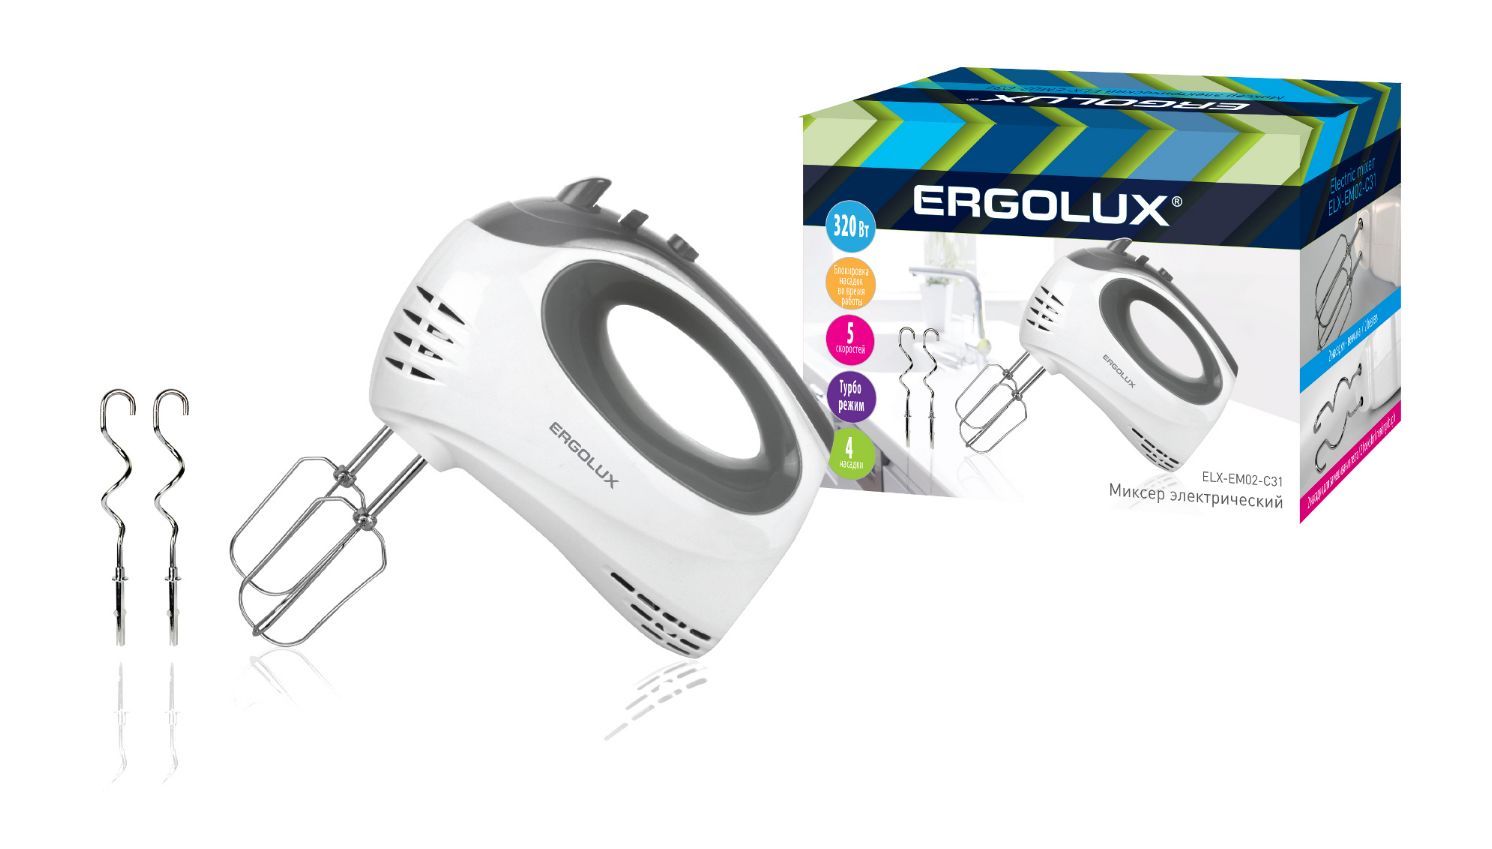  ERGOLUX ELX-EM02-C31 -